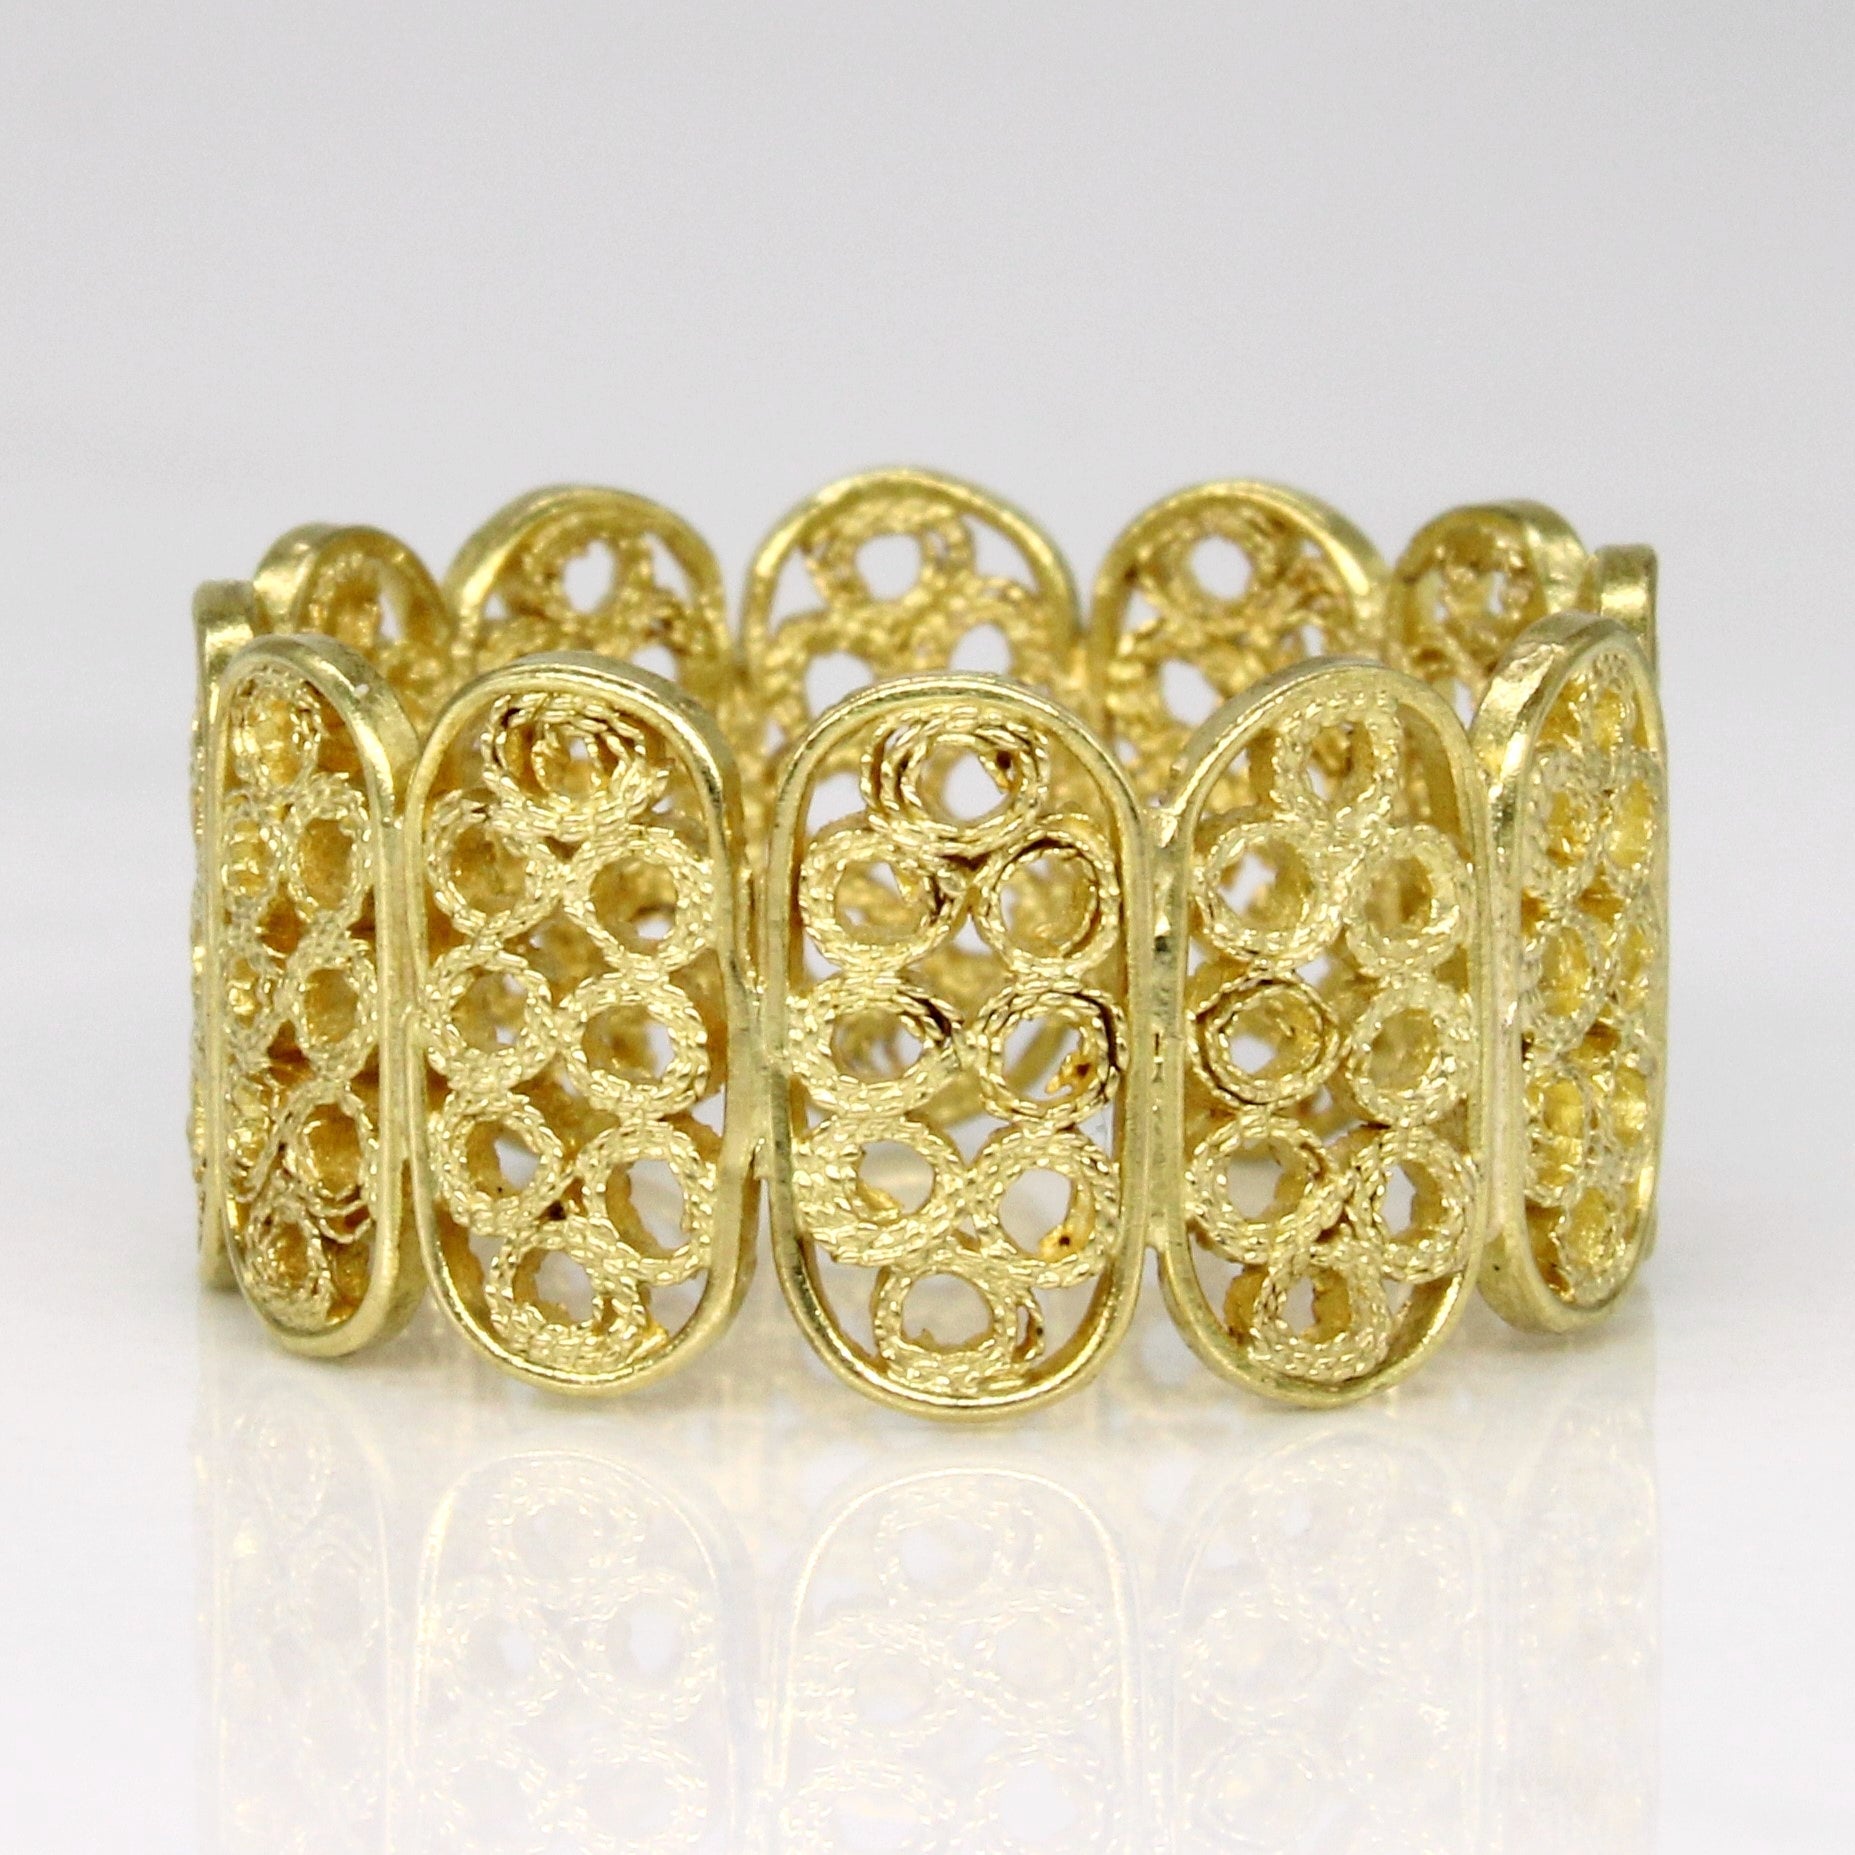 18k Yellow Gold Lattice Ring | SZ 6 |